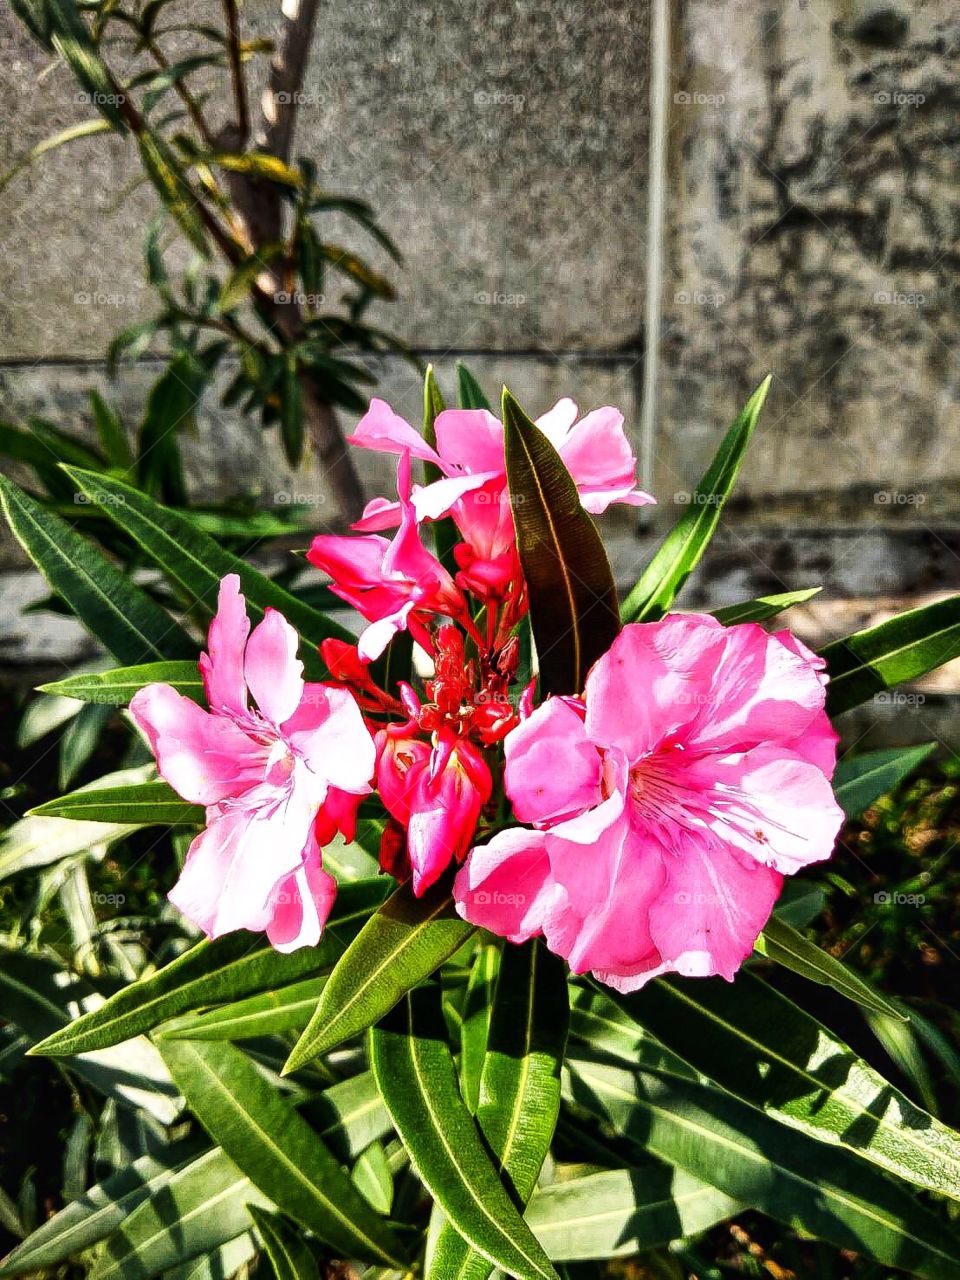 pink flower in my garden.